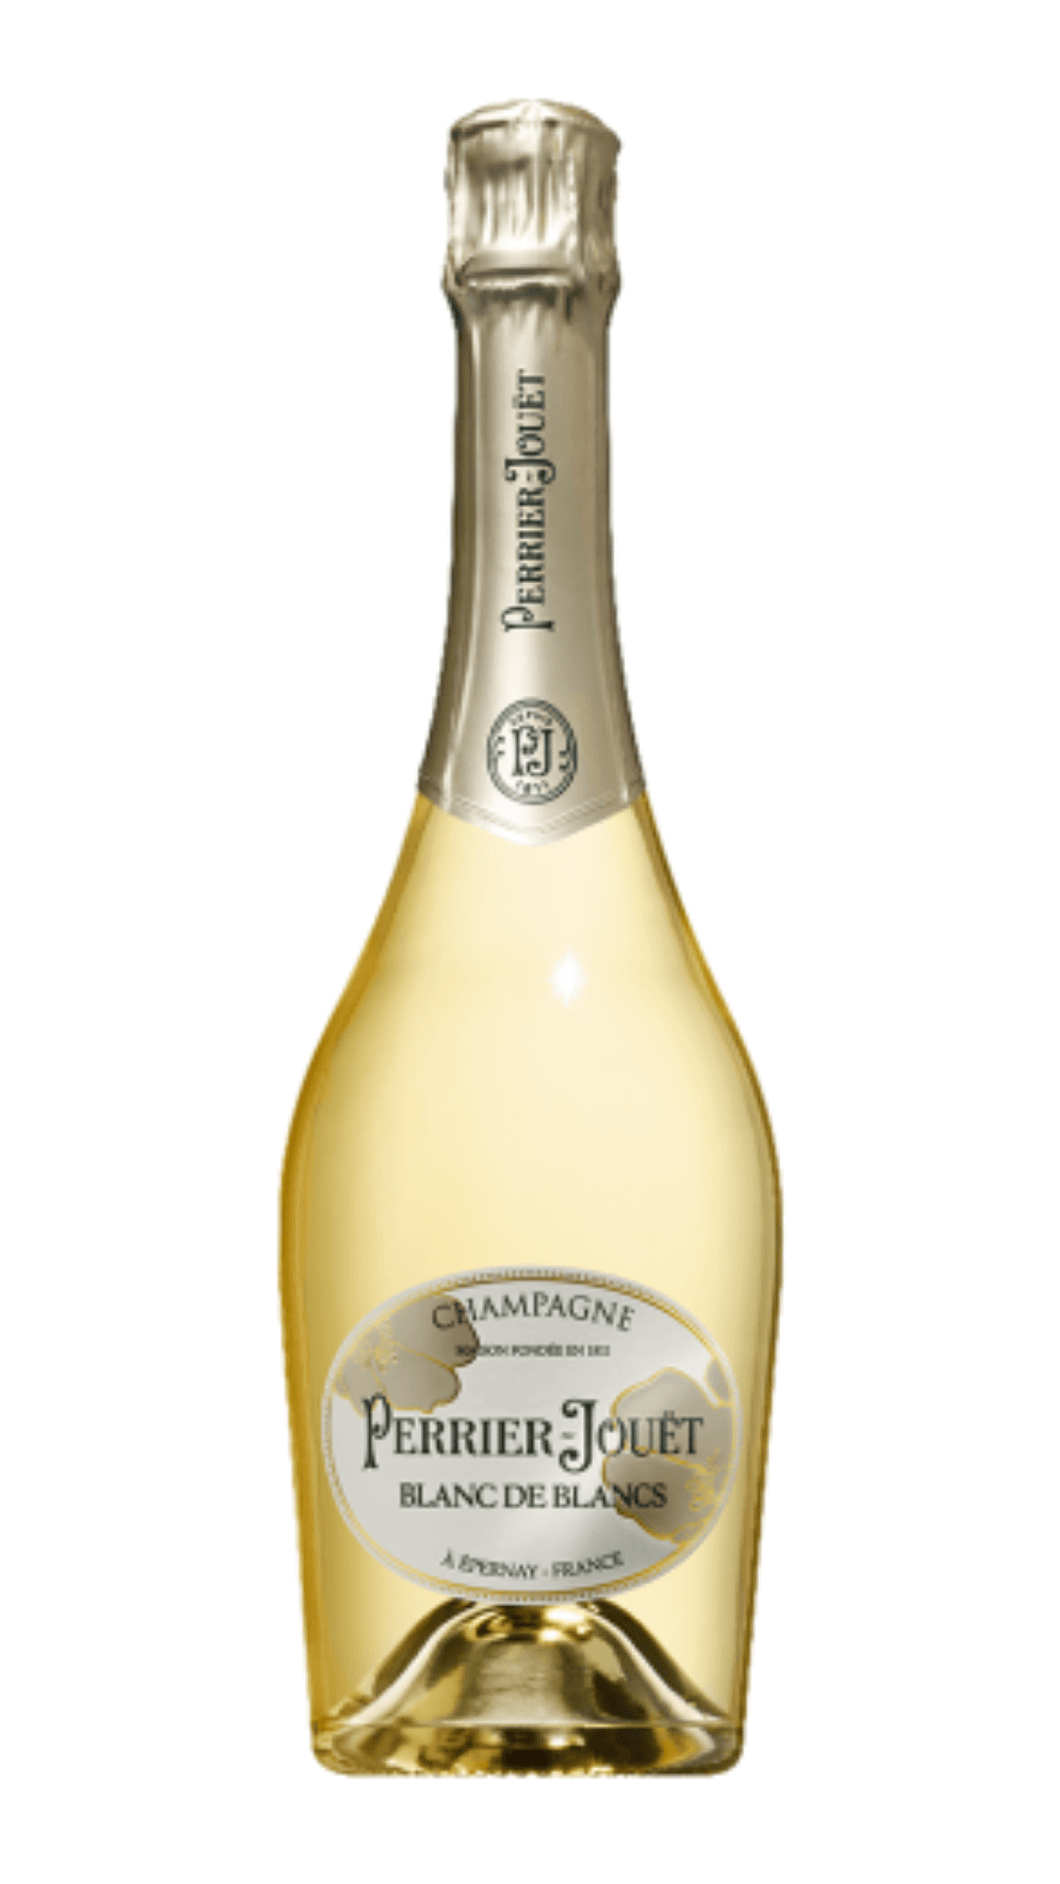 Champagne Blanc de Blancs Perrier-Jouet